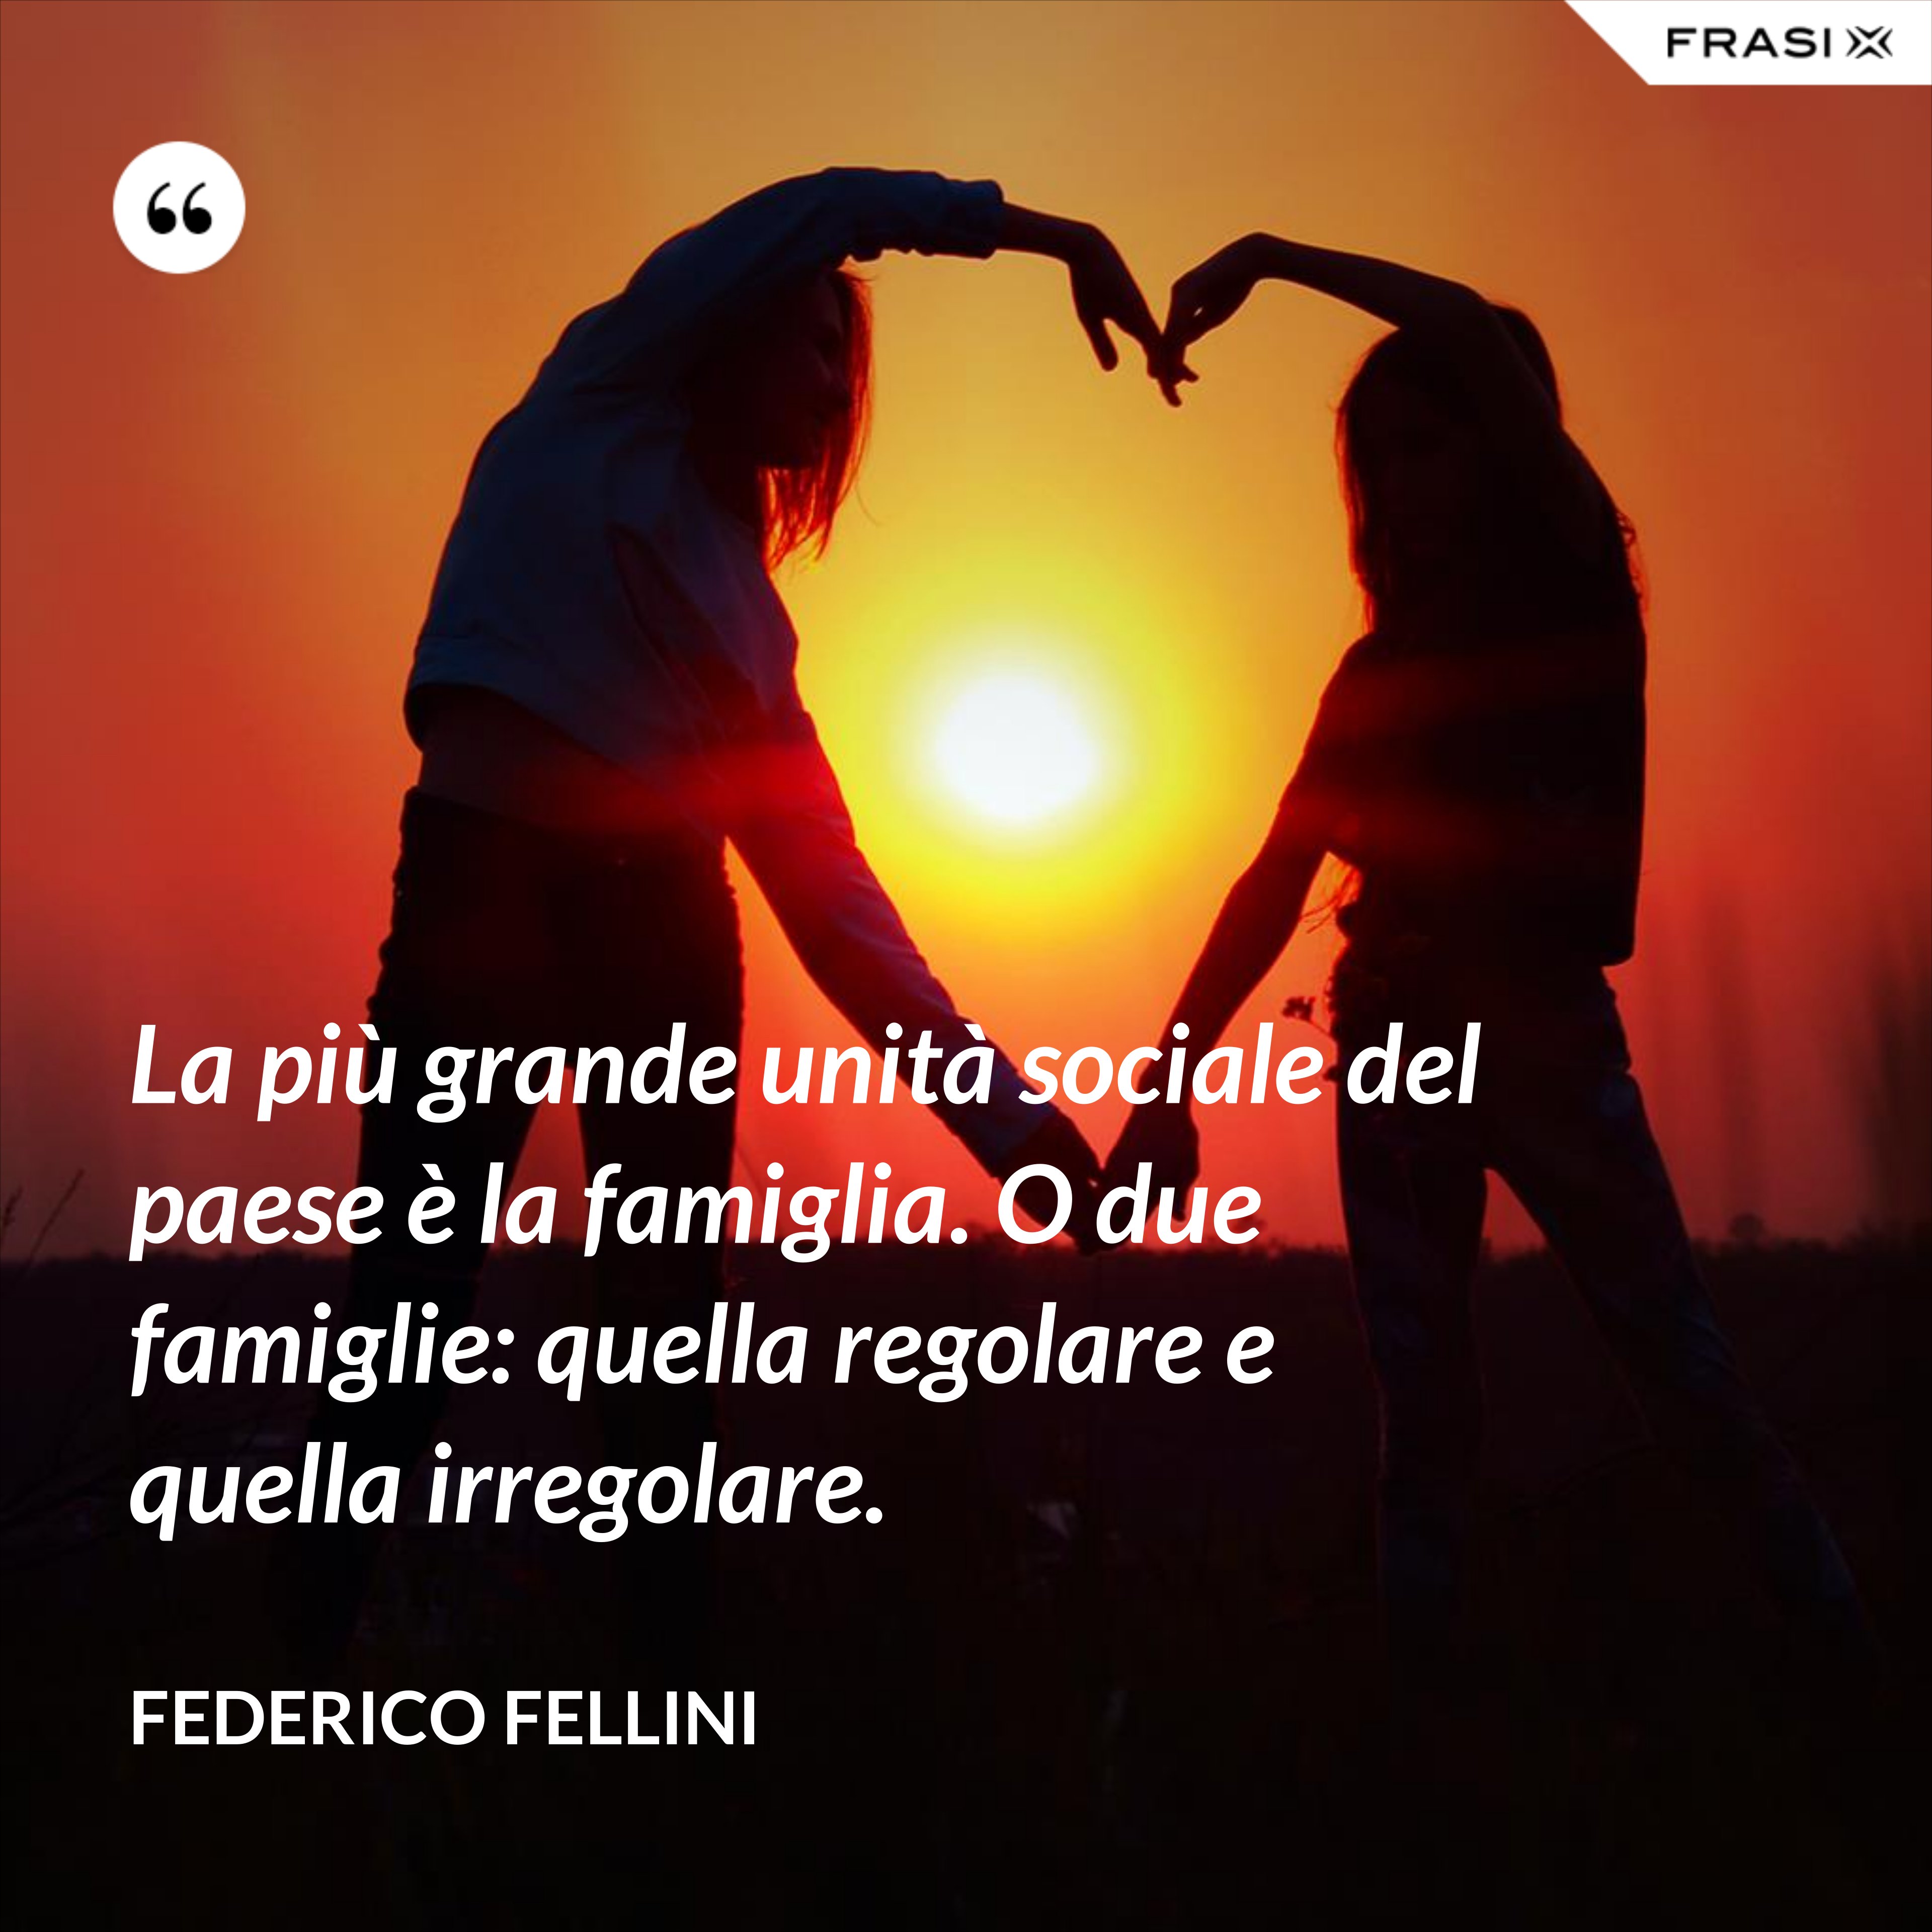 La più grande unità sociale del paese è la famiglia. O due famiglie: quella regolare e quella irregolare. - Federico Fellini